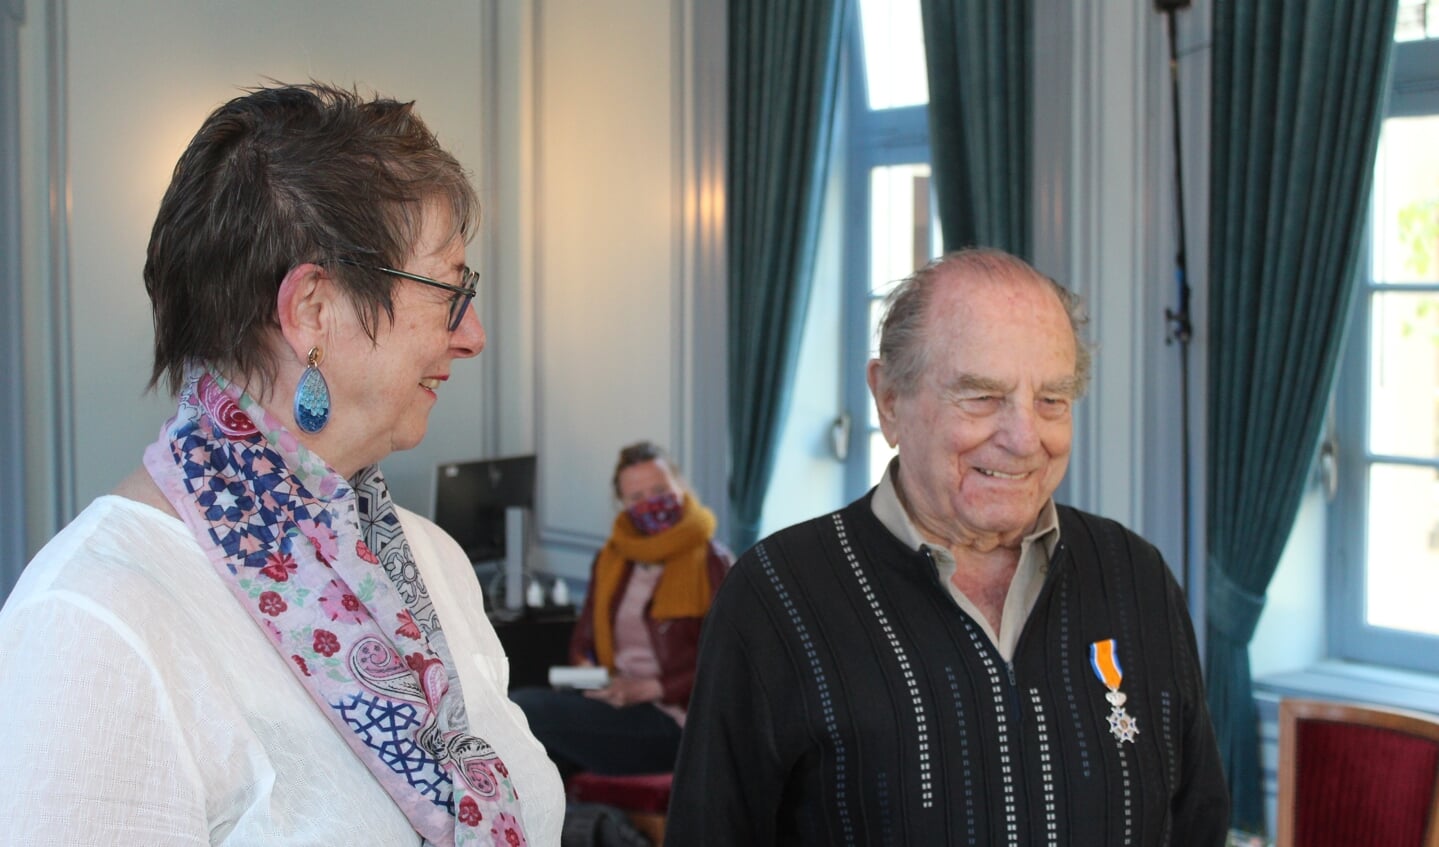 De heer Versluis (96) was de oudste Nederlander, die in 2021 een K.O. ontving